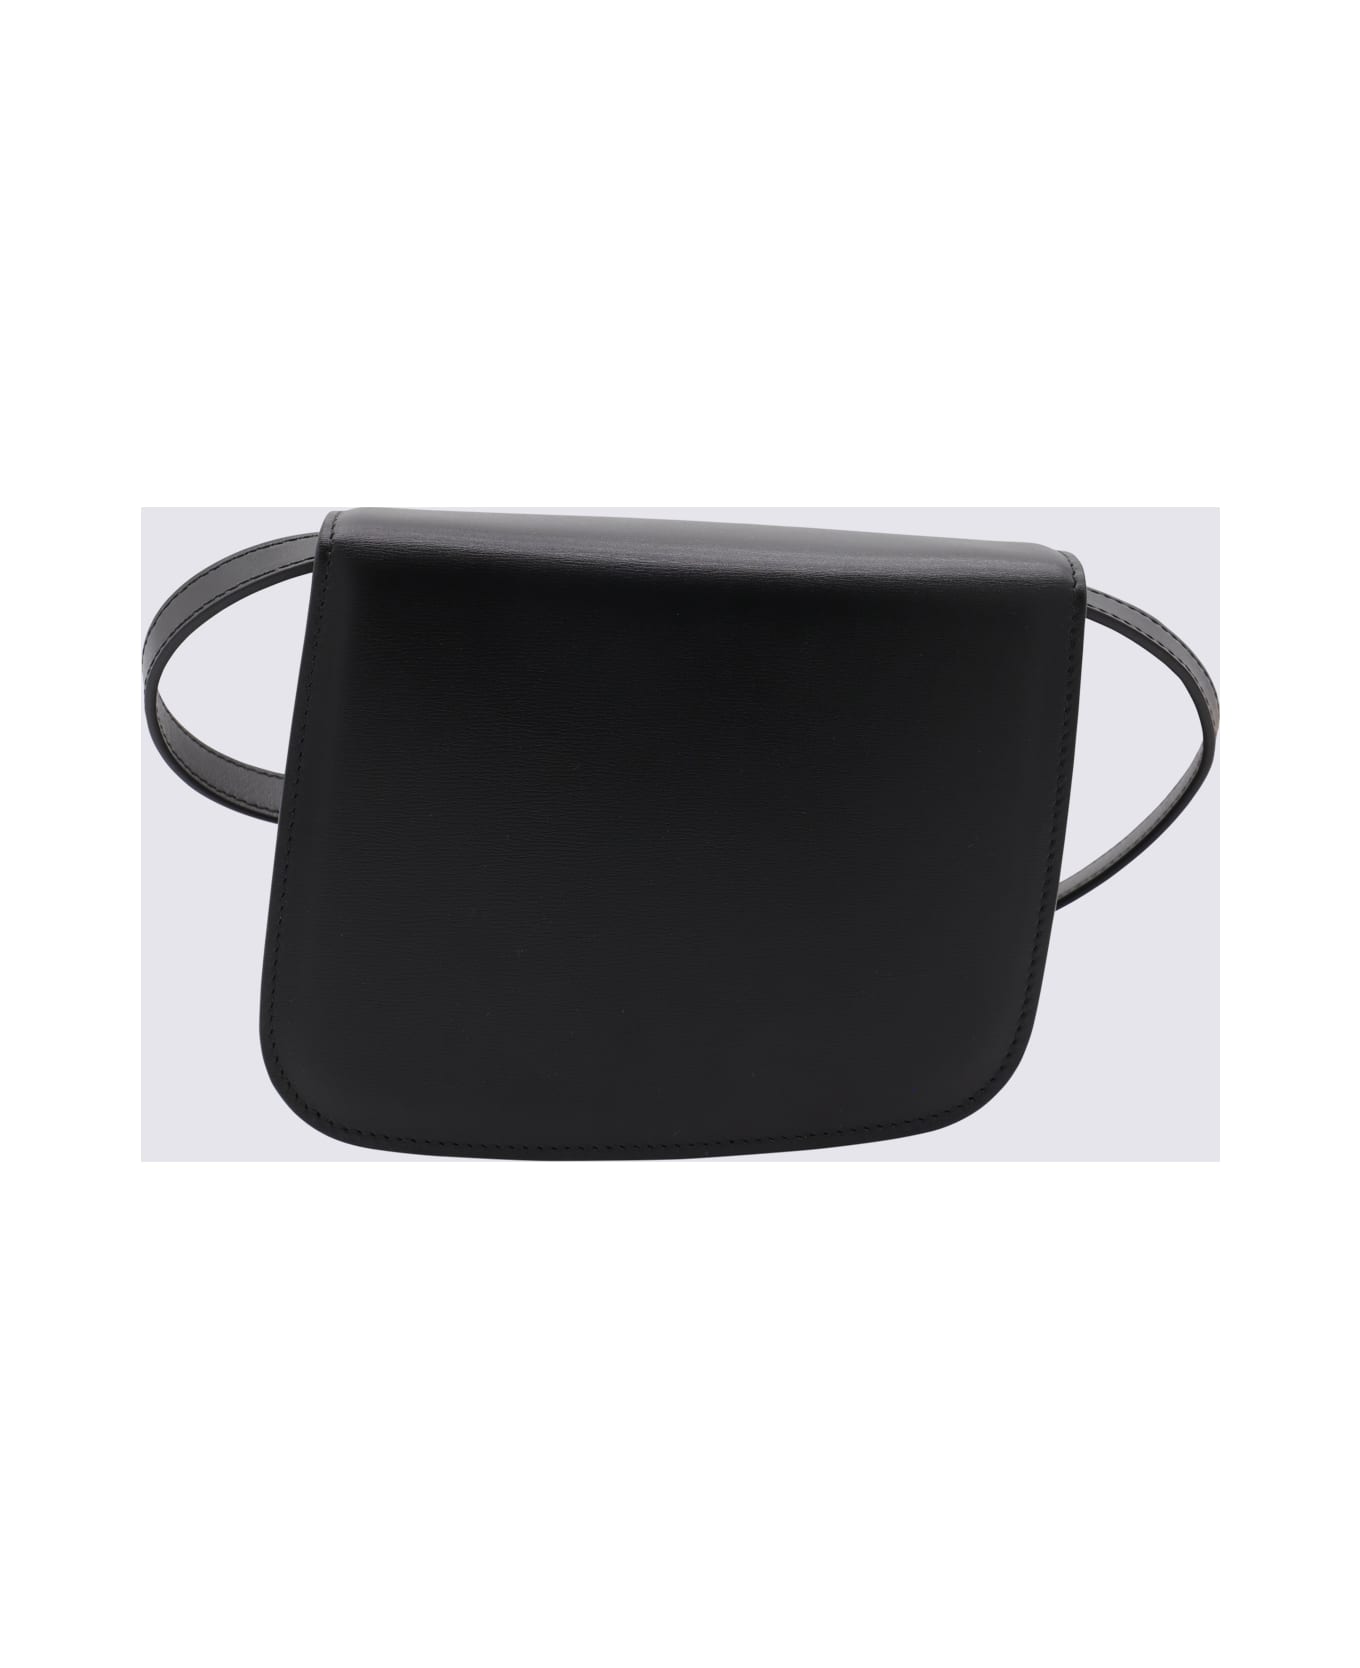 Ferragamo Black Leather Oyster Flap Crossbody Bag - Black